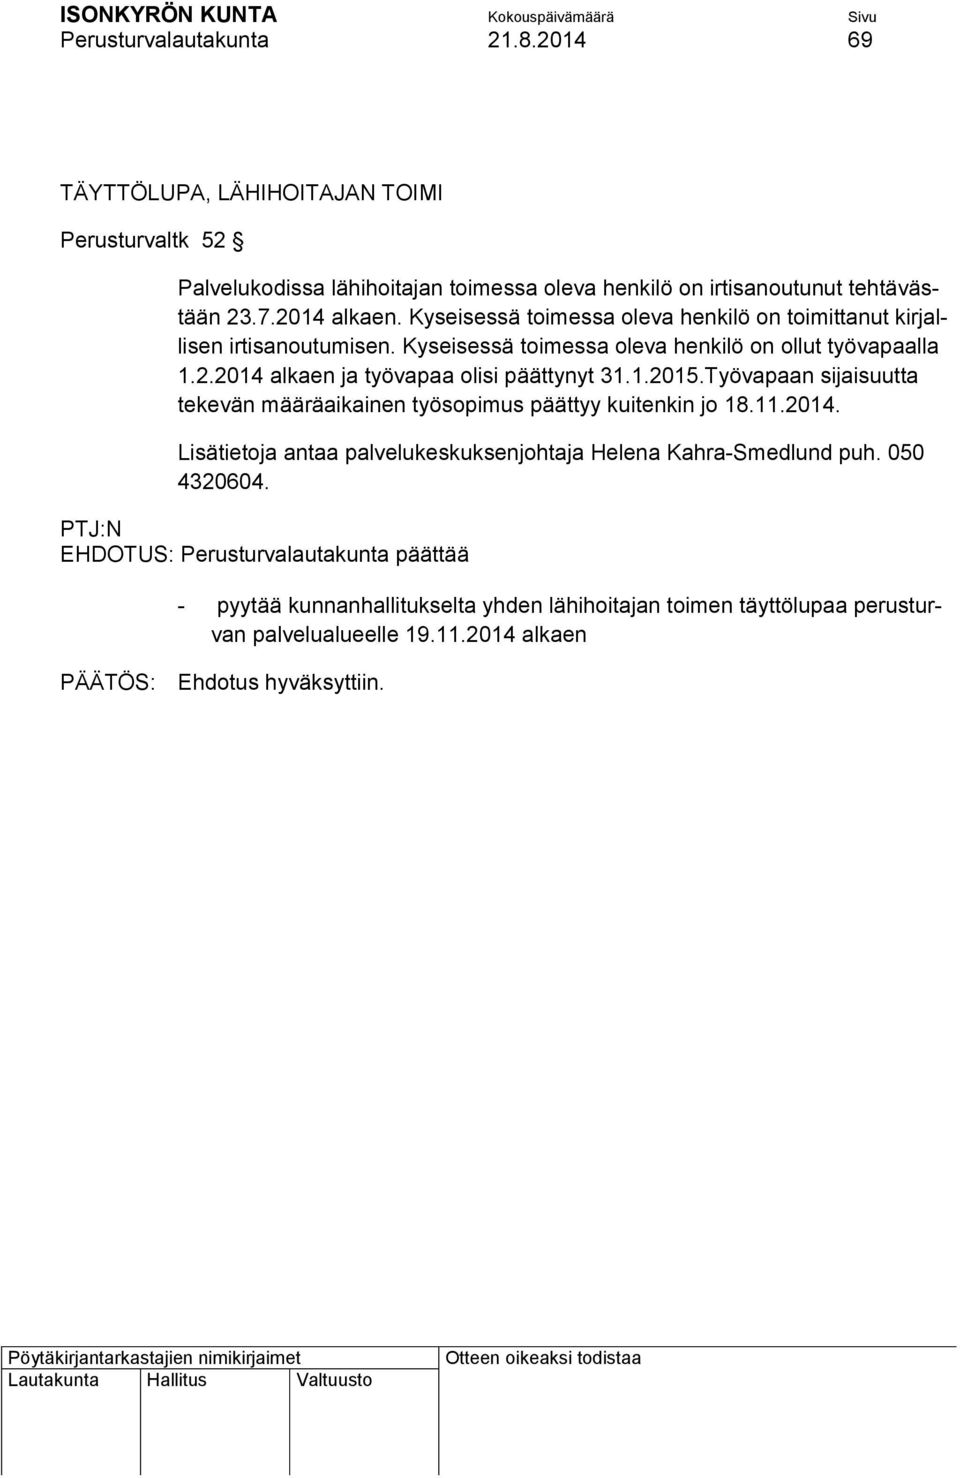 1.2015.Työvapaan sijaisuutta tekevän määräaikainen työsopimus päättyy kuitenkin jo 18.11.2014. Lisätietoja antaa palvelukeskuksenjohtaja Helena Kahra-Smedlund puh. 050 4320604.